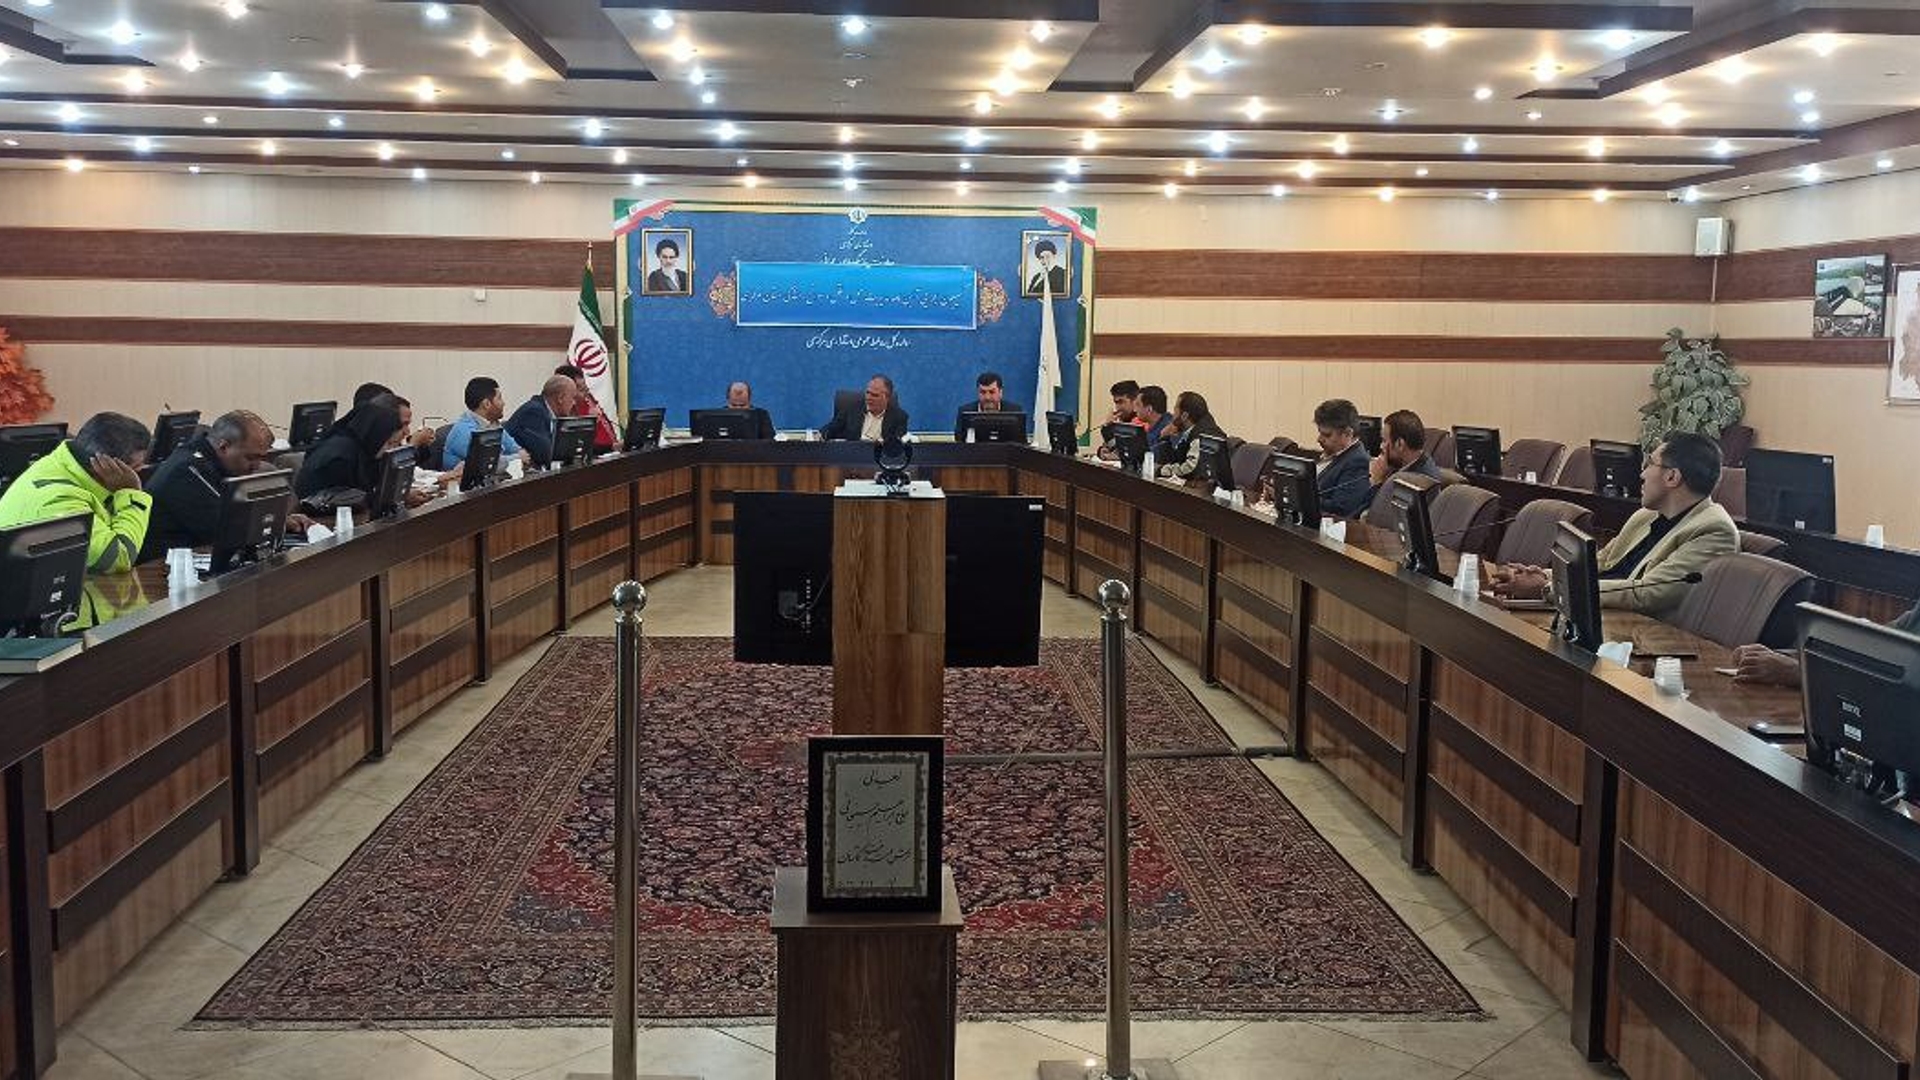 سیزدهمین جلسه کمیسیون اجرایی آیین نامه مدیریت حمل و نقل و سوانح رانندگی استان برگزار شد.